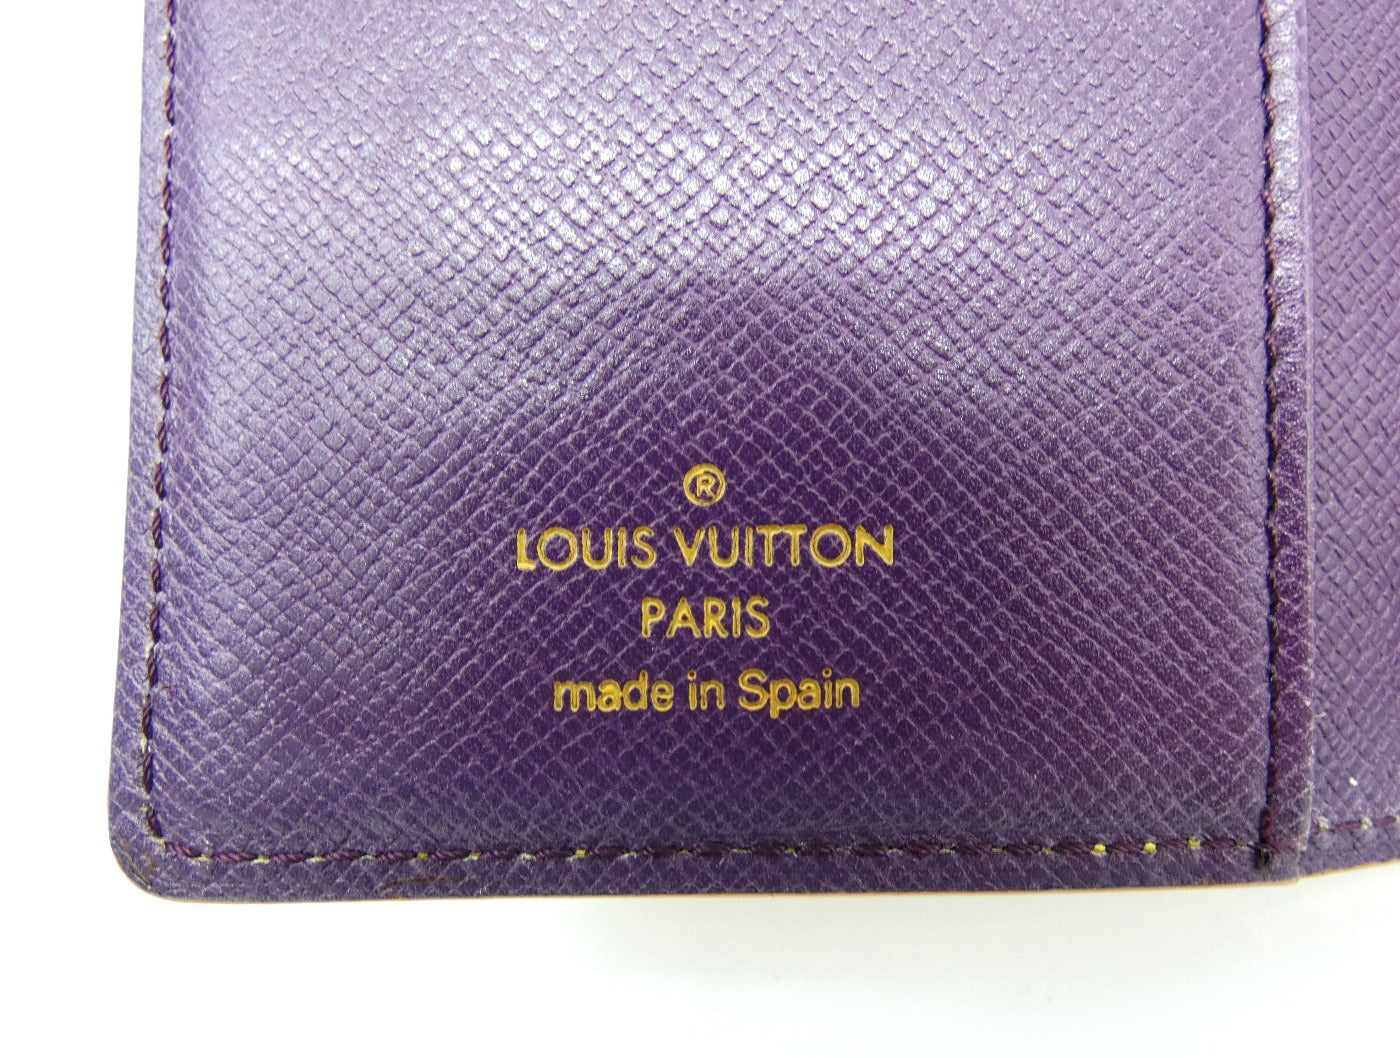 Louis Vuitton Vintage Yellow Epi Trifold Portefeuille Leather